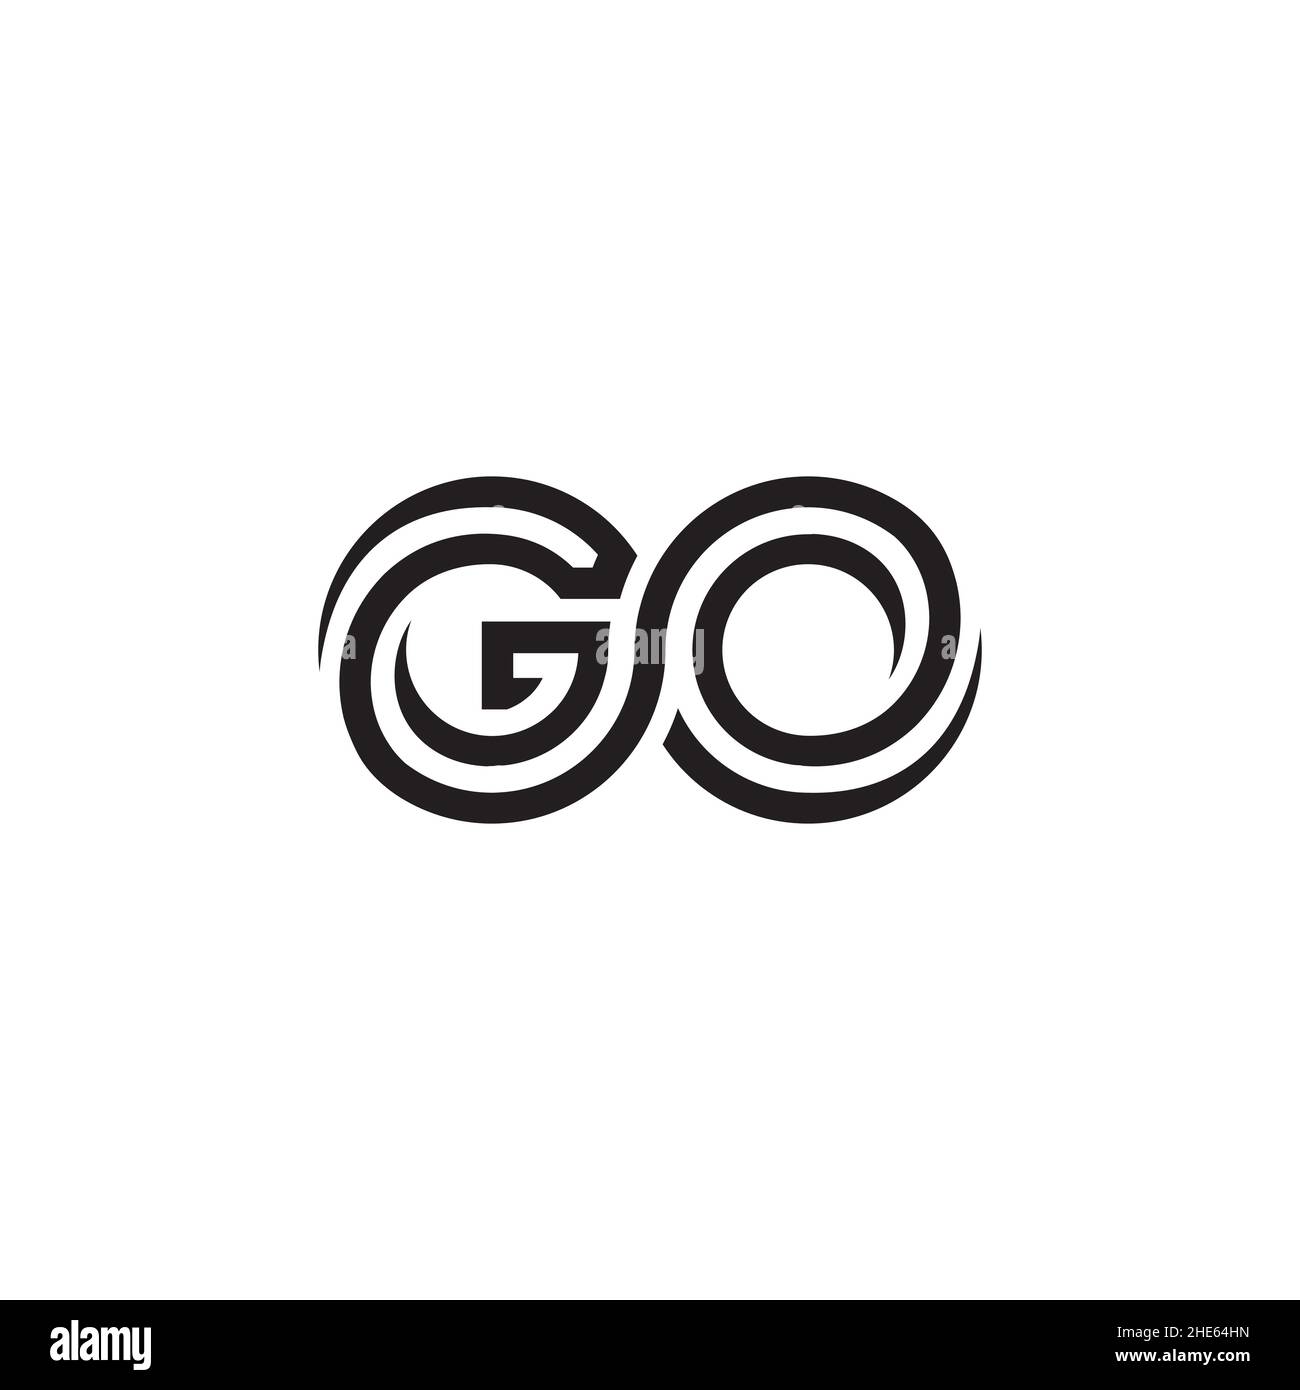 GO infinity logo design vector illustration on white background. Stock Vector